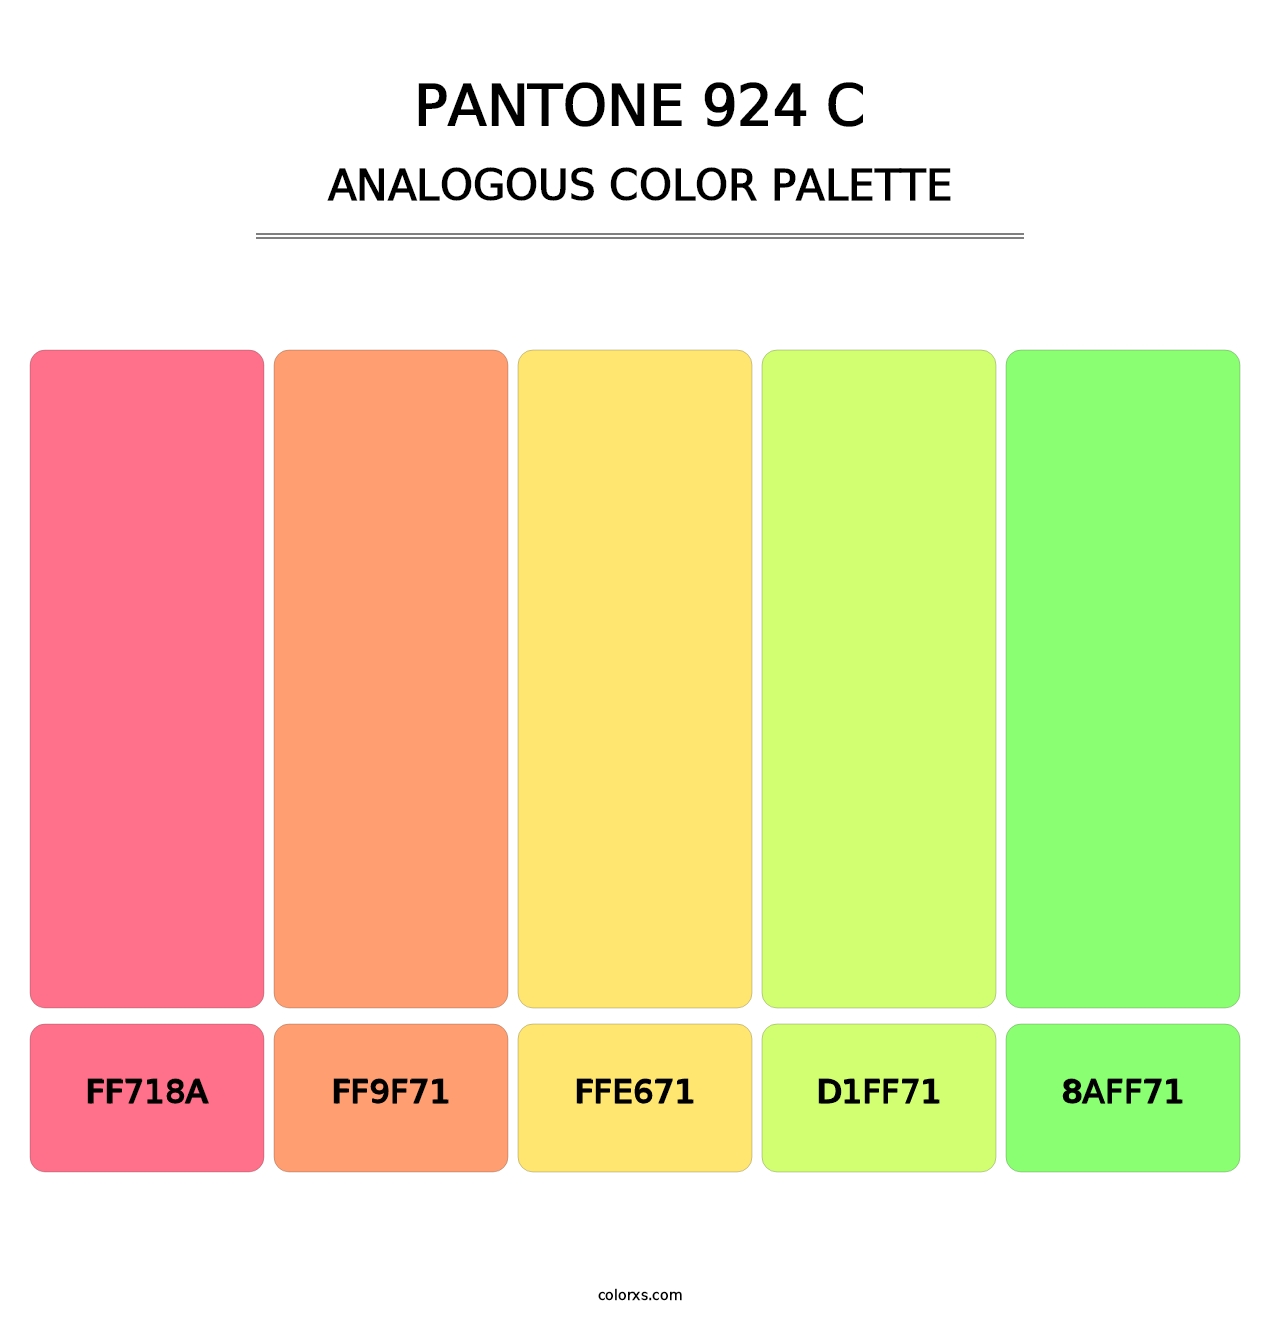 PANTONE 924 C - Analogous Color Palette